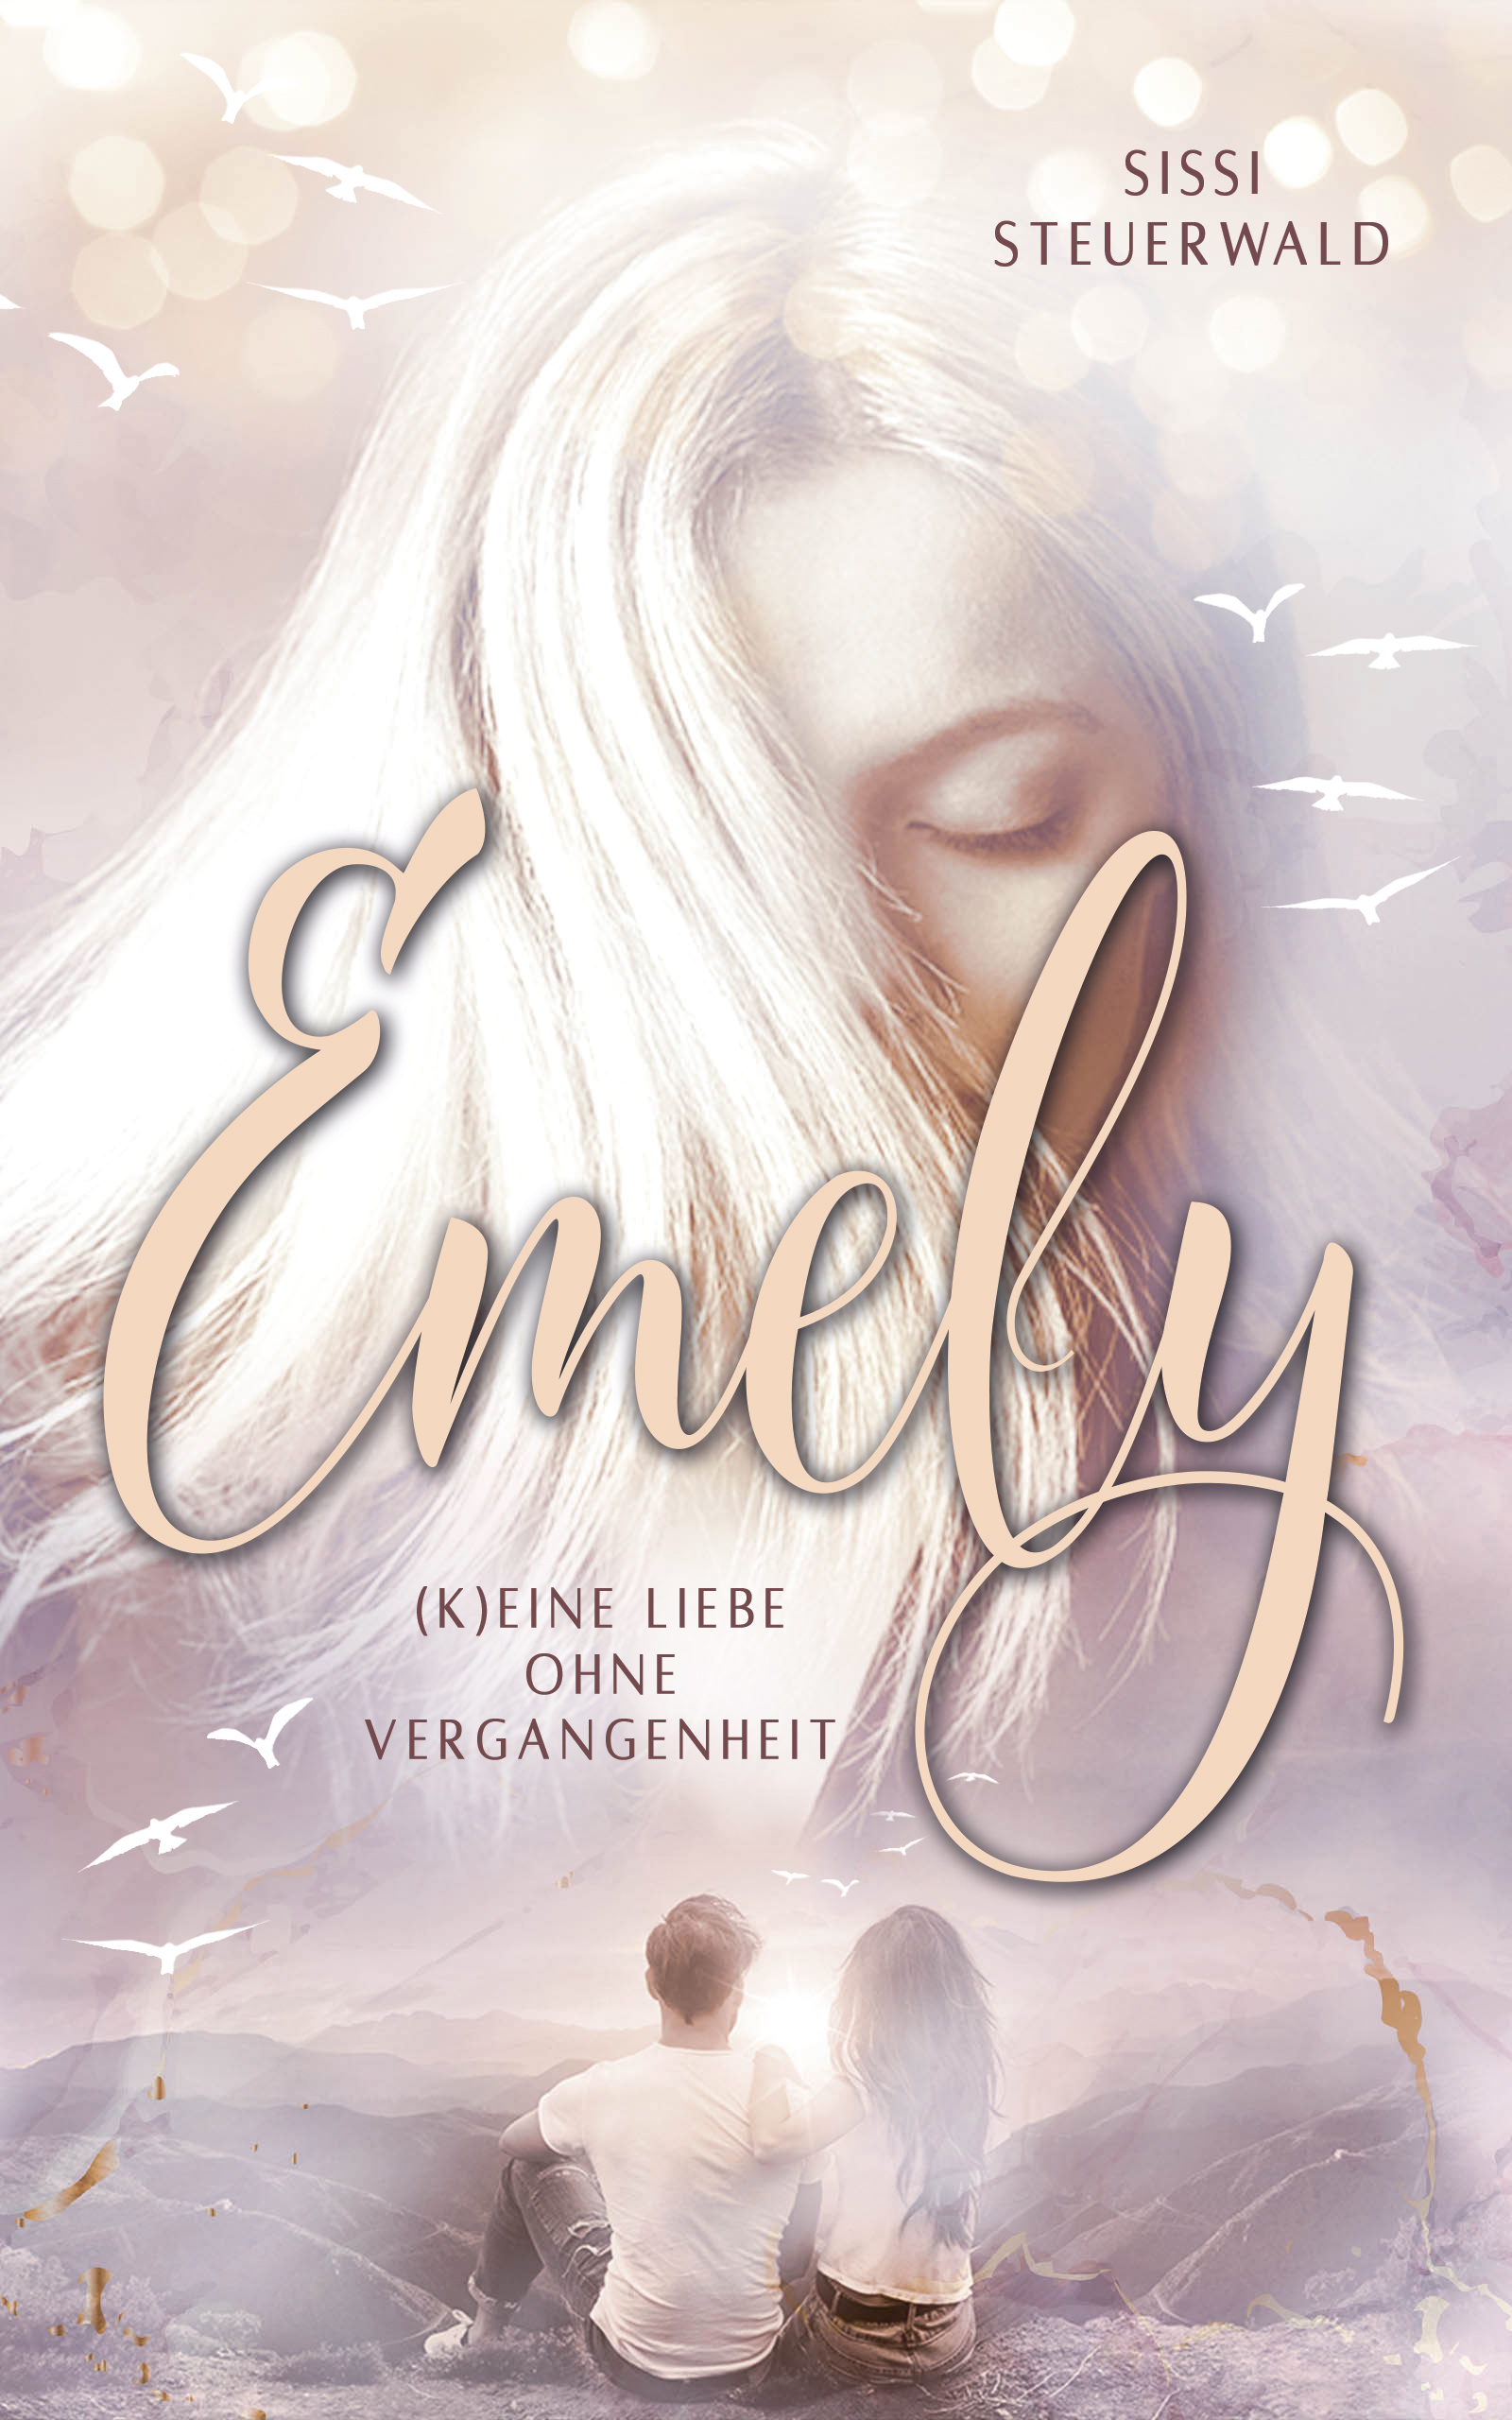 Emely – (K)eine Liebe ohne Vergangenheit